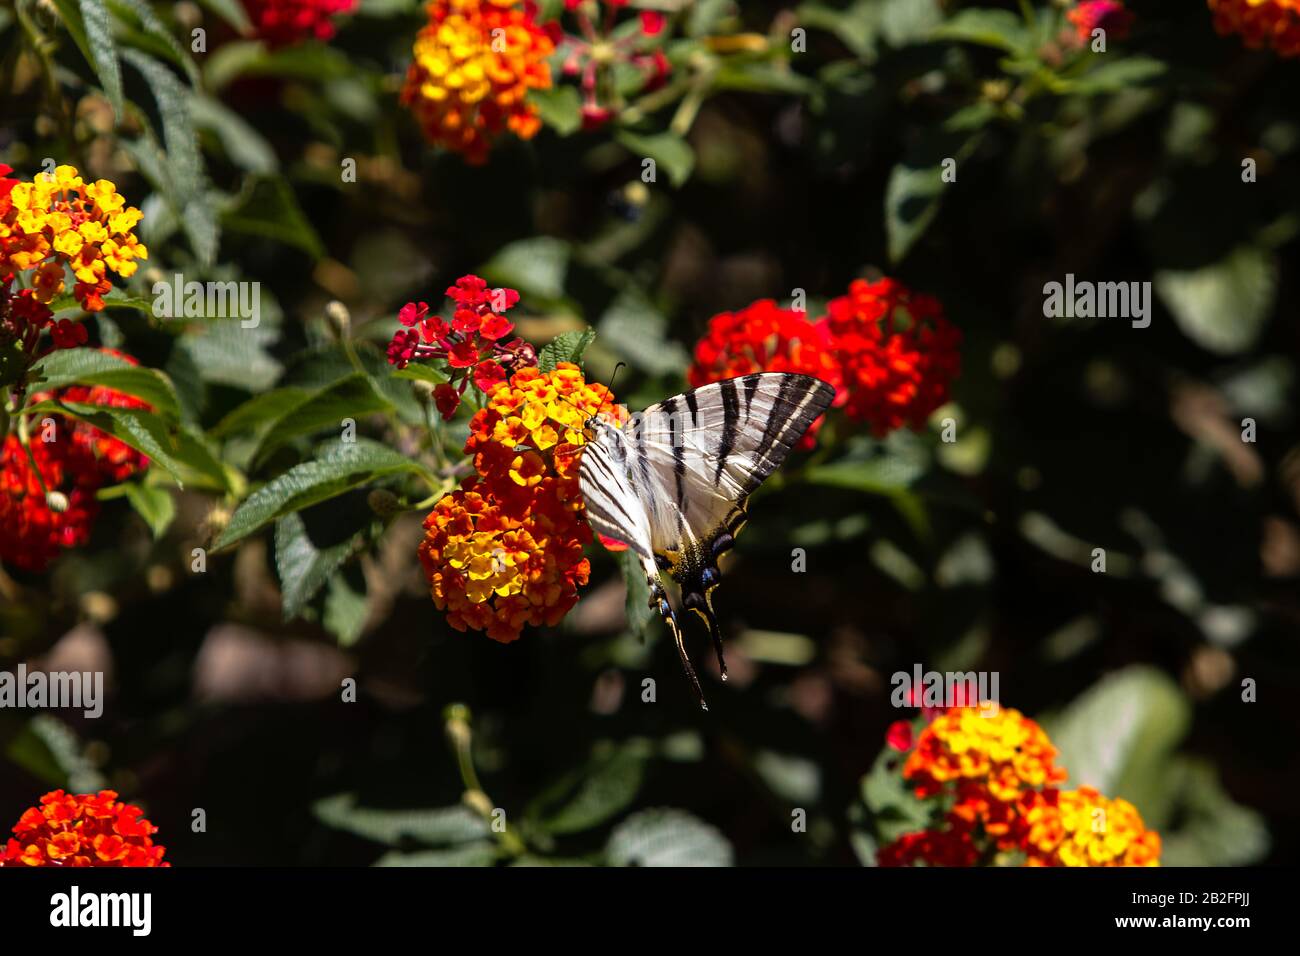 Gros plan sur un Rare papillon Swallowtail, se nourrissant sur un groupe de petites fleurs orange-jaune à midi. Banque D'Images